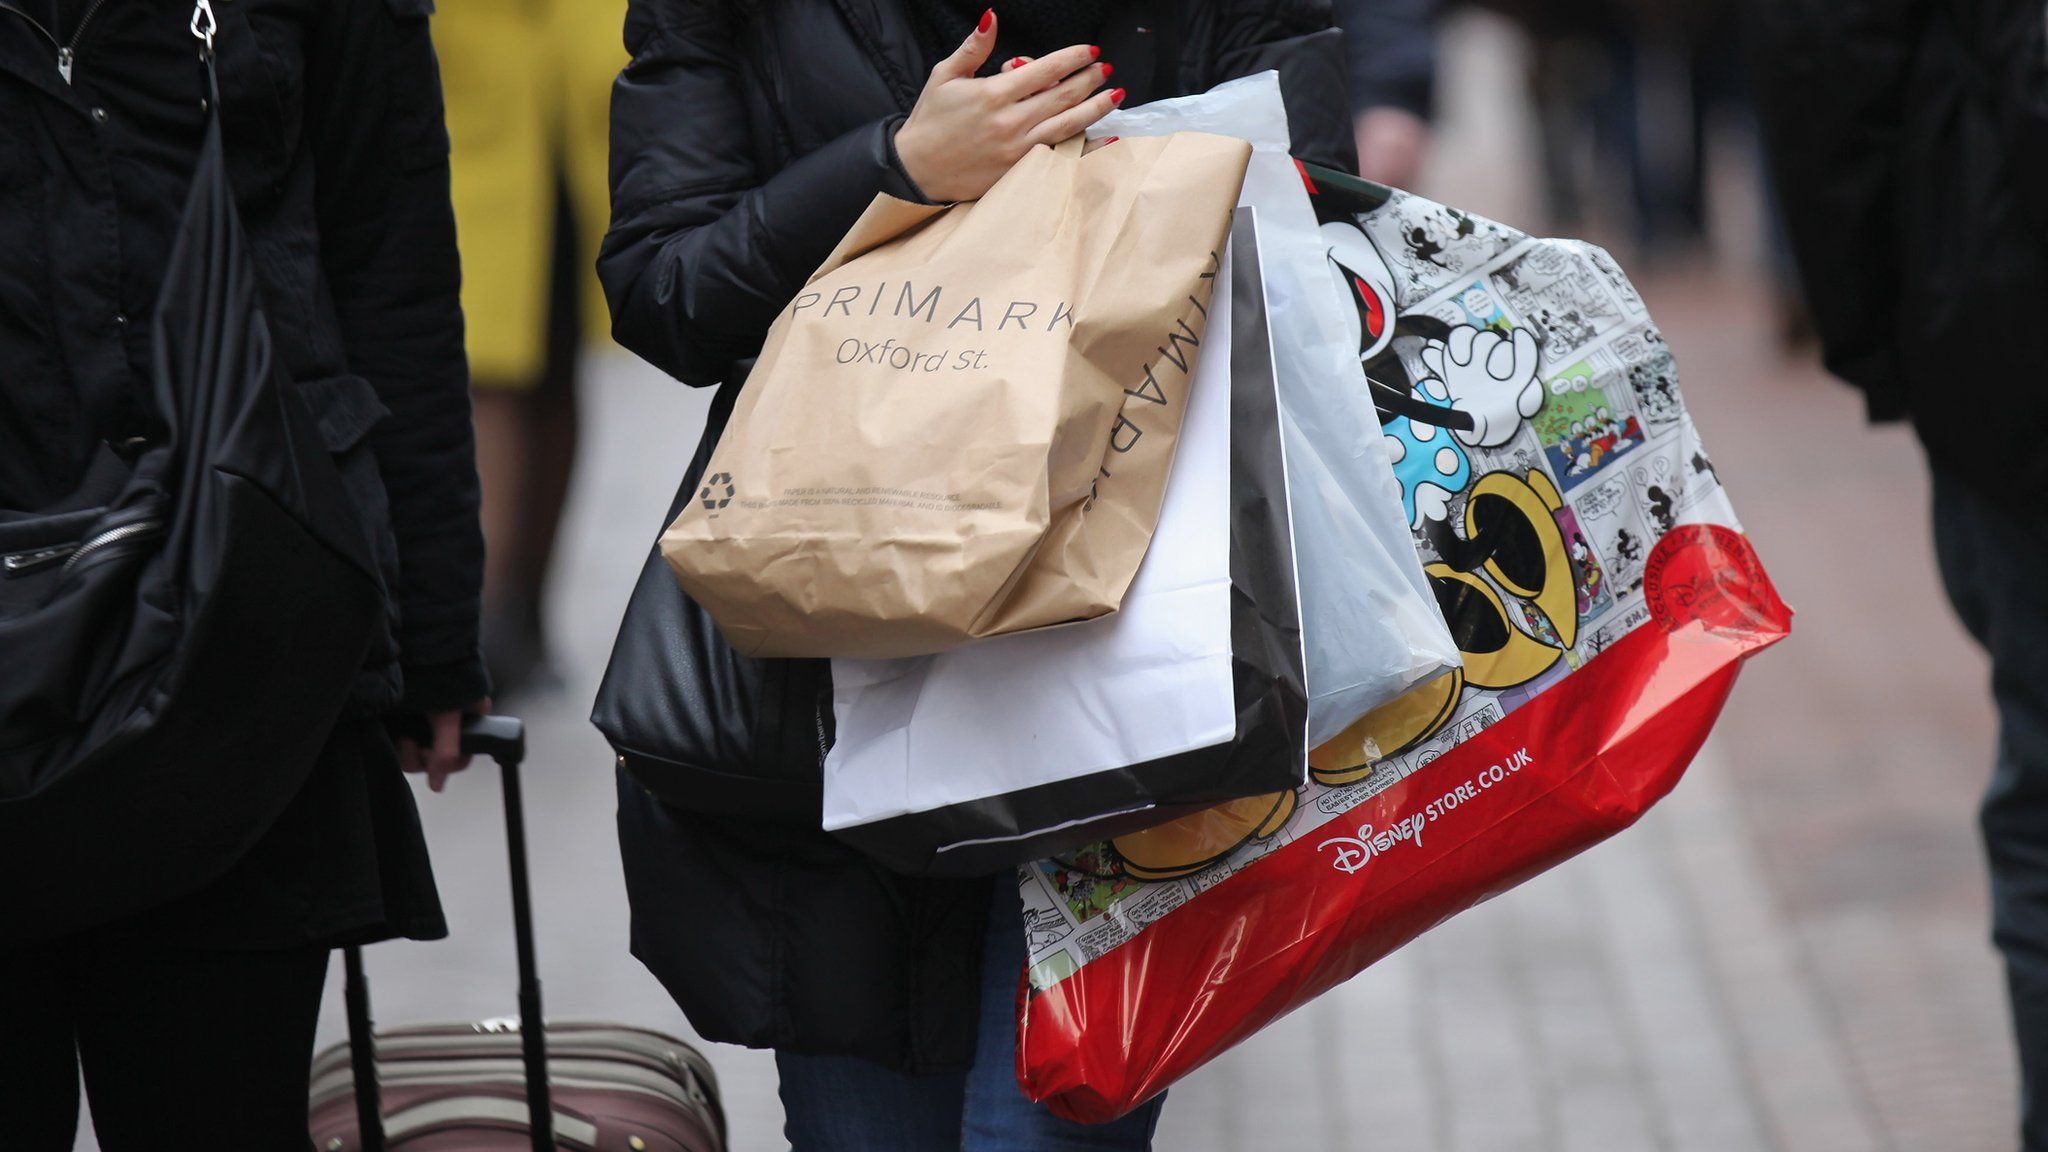 Woman carrying shopping bags